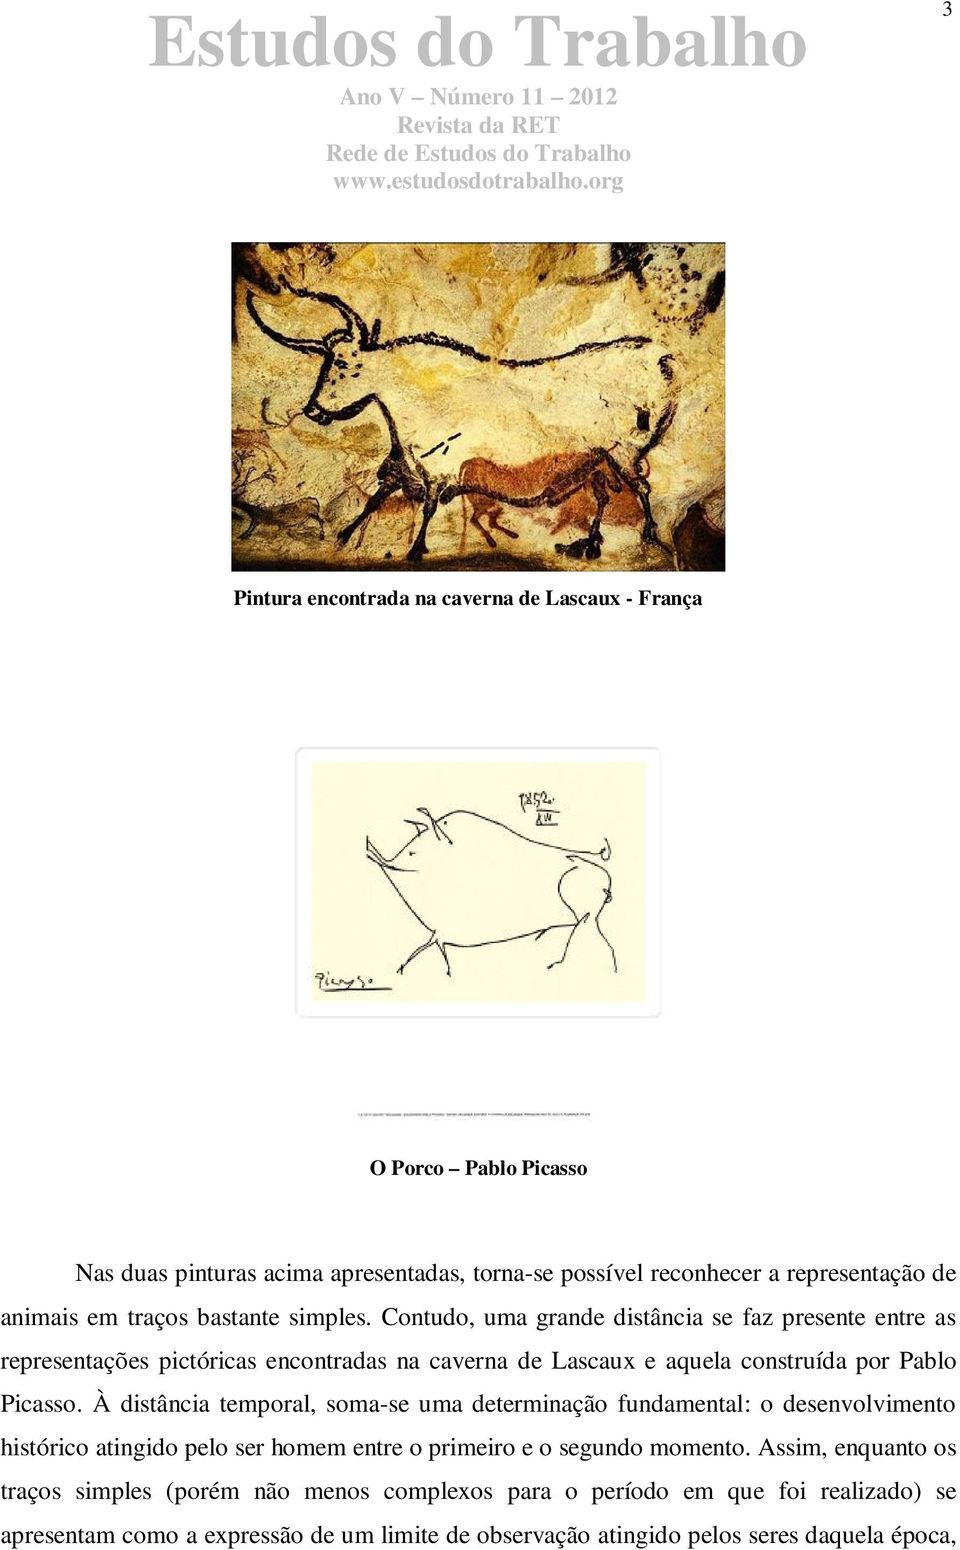 Contudo, uma grande distância se faz presente entre as representações pictóricas encontradas na caverna de Lascaux e aquela construída por Pablo Picasso.